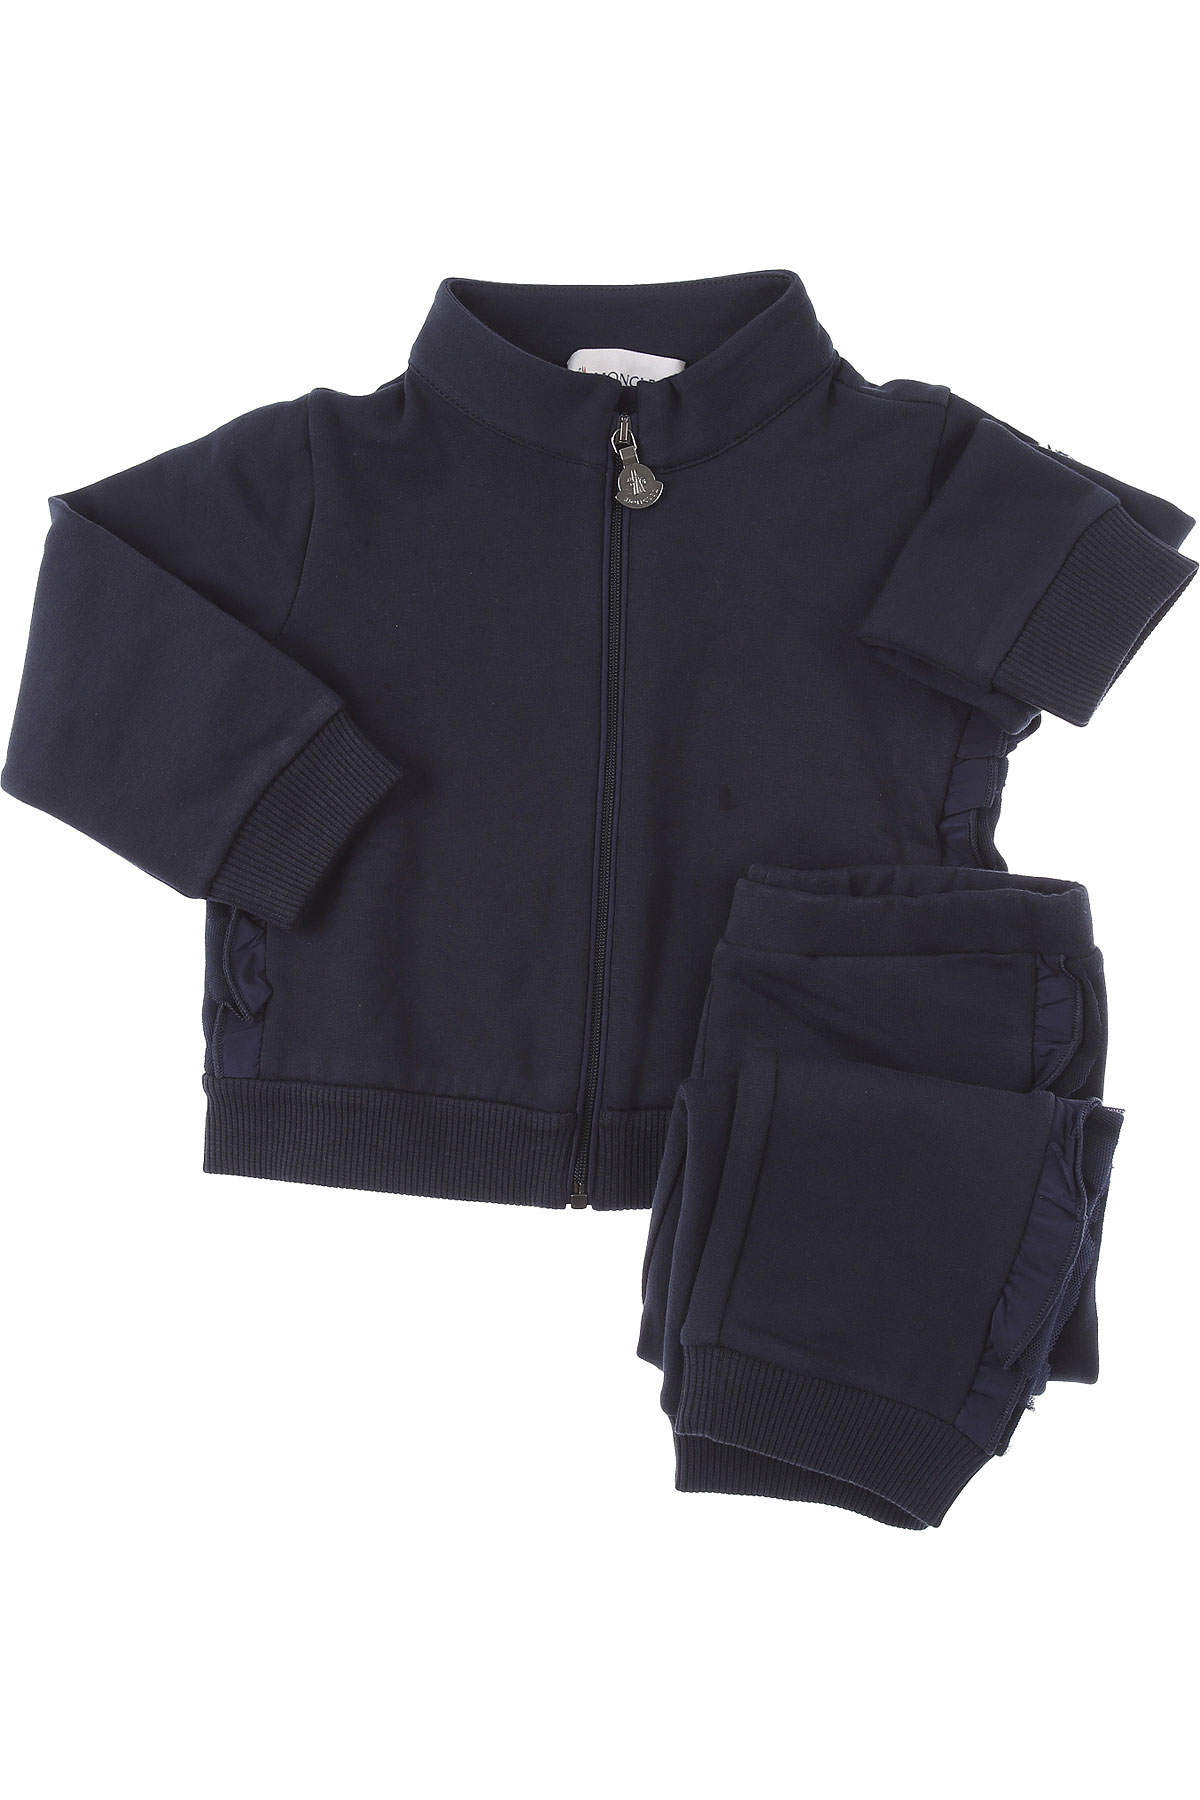 Moncler Baby Sweatshirt & Kapuzenpullover für Mädchen Günstig im Sale, Marine blau, Baumwolle, 2017, 12M 18M 24M 2Y